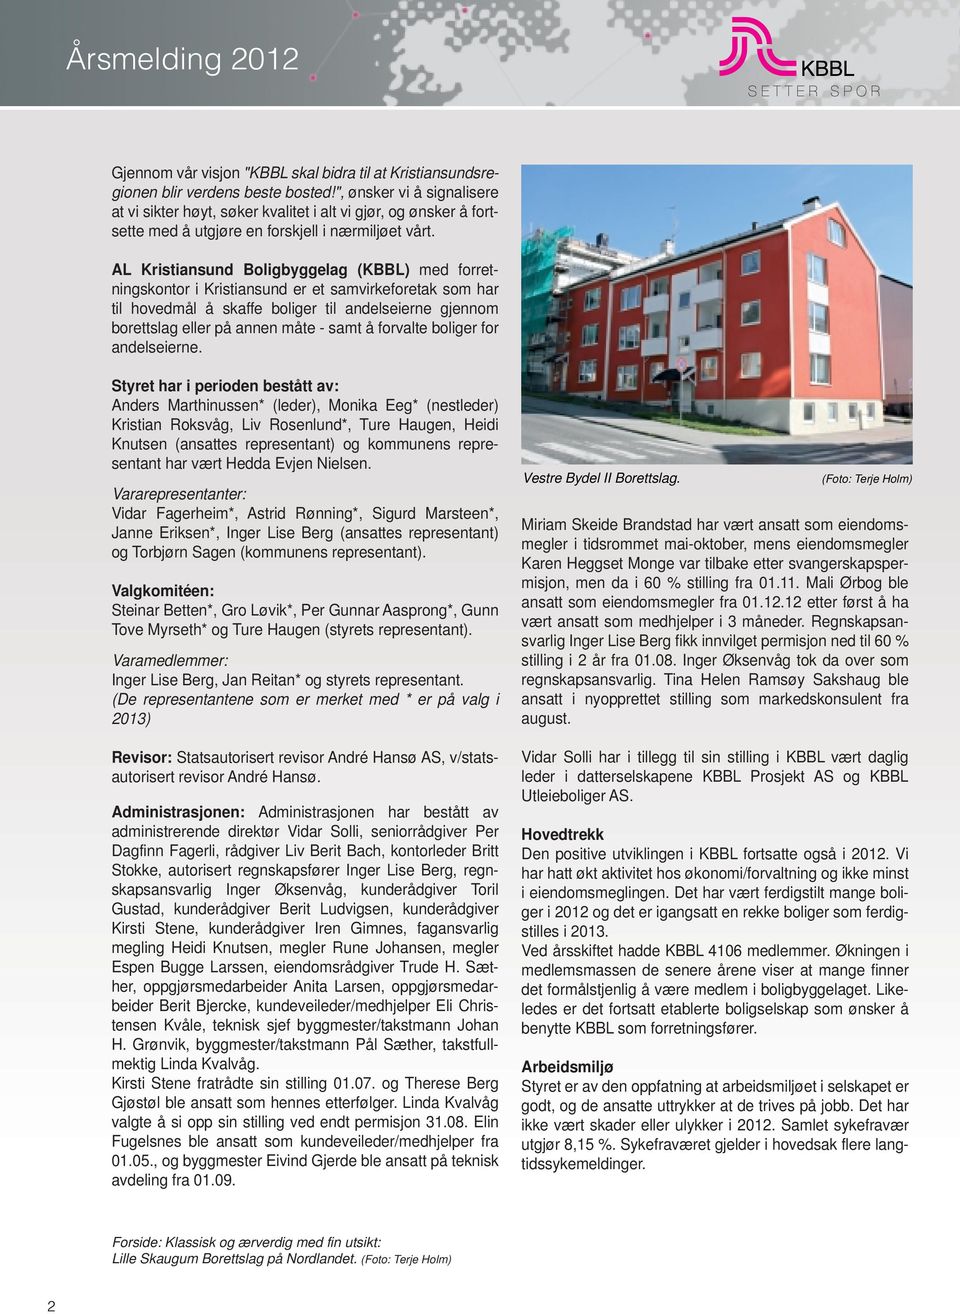 AL Kristiansund Boligbyggelag (KBBL) med forretningskontor i Kristiansund er et samvirkeforetak som har til hovedmål å skaffe boliger til andelseierne gjennom borettslag eller på annen måte - samt å